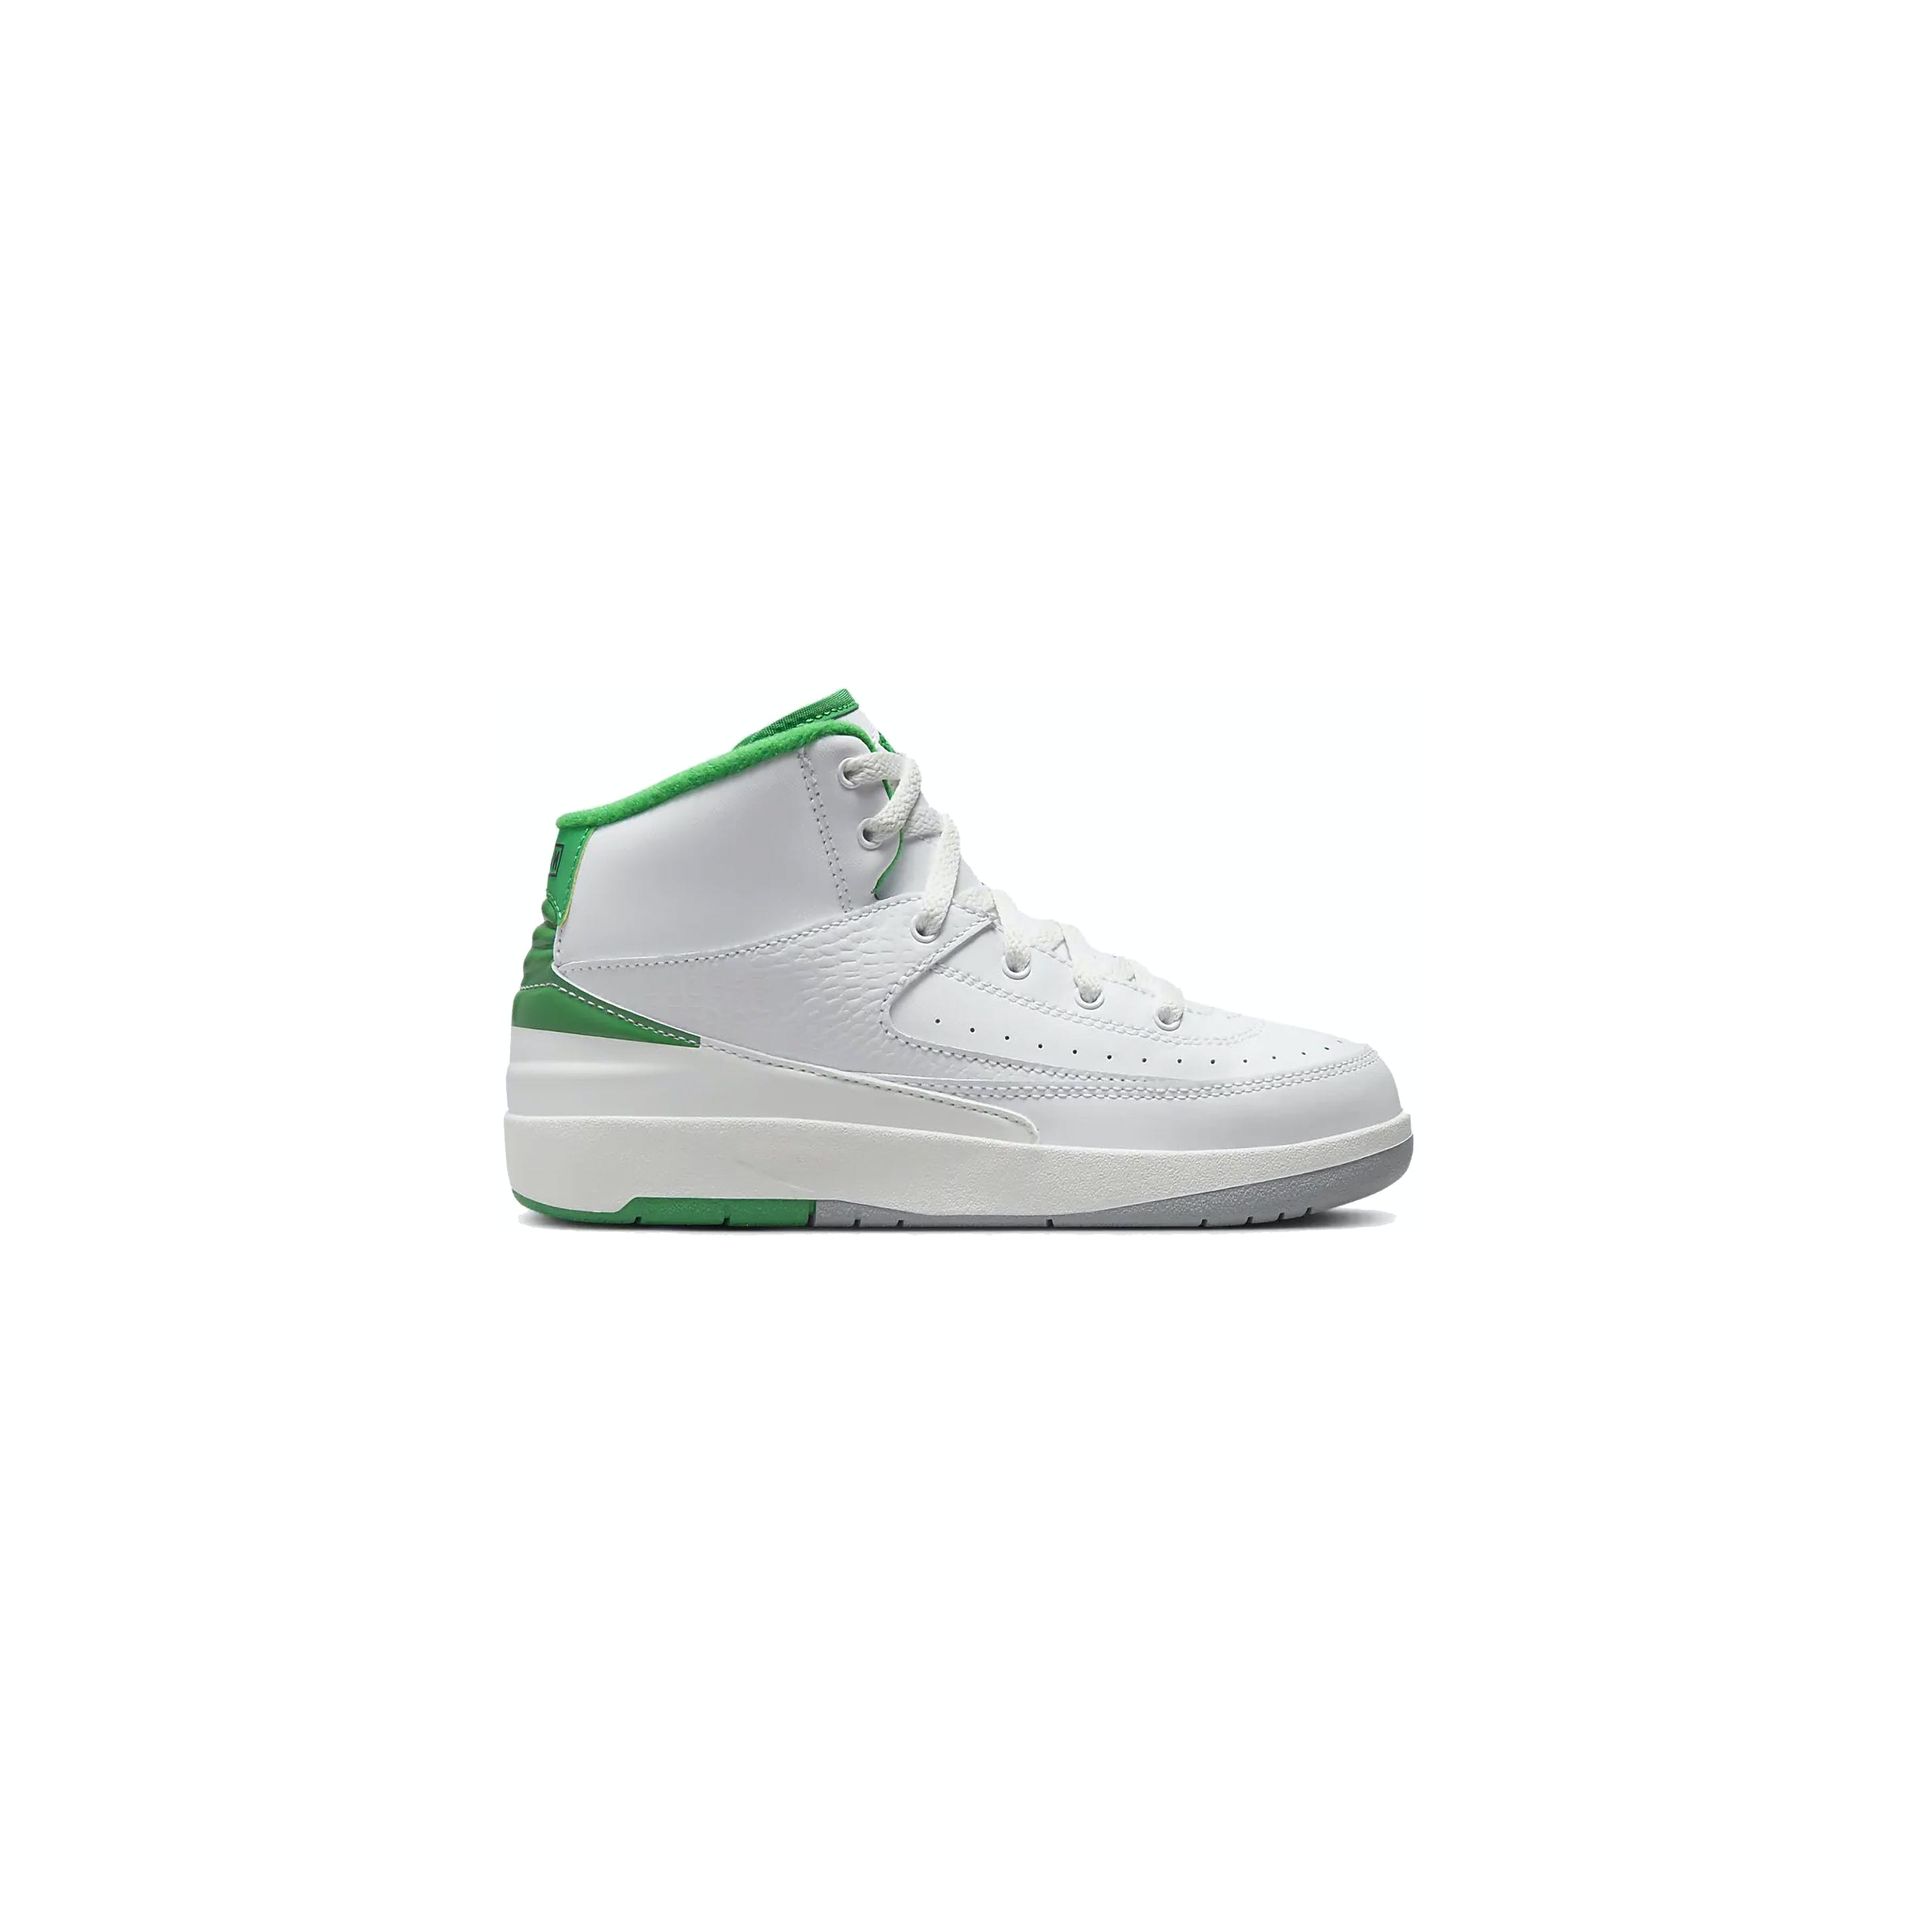 Air Jordan 2 PS Retro Lucky Green